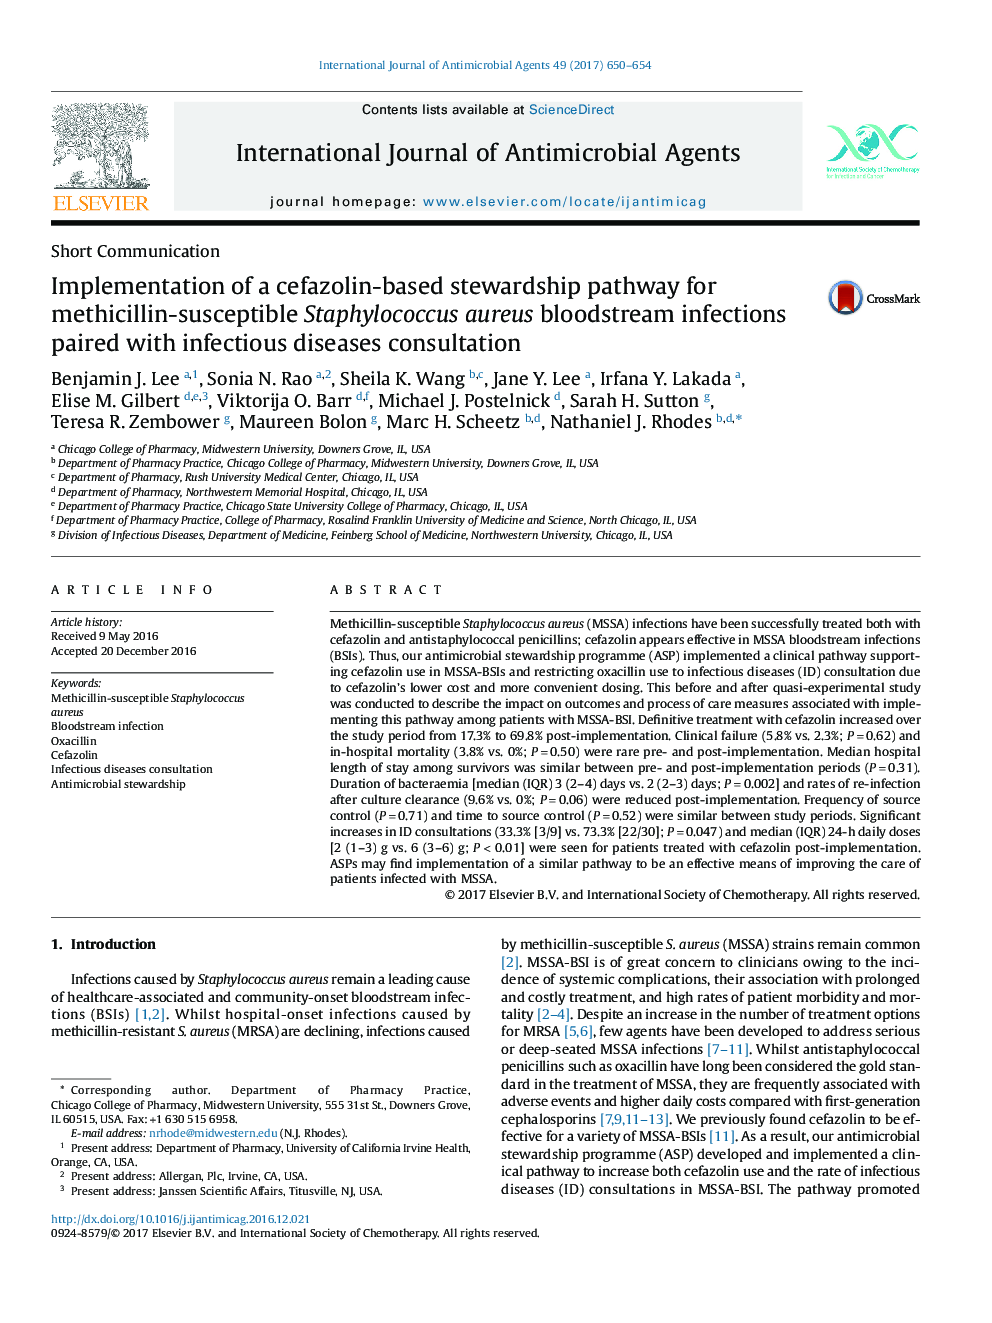 پیاده سازی یک مسیر سرپرستی مبتنی بر سفازولین برای عفونت های جریان خون استافیلوکوکوس اورئوس حساس به متسییلین همراه با مشاوره های بیماری های عفونی 